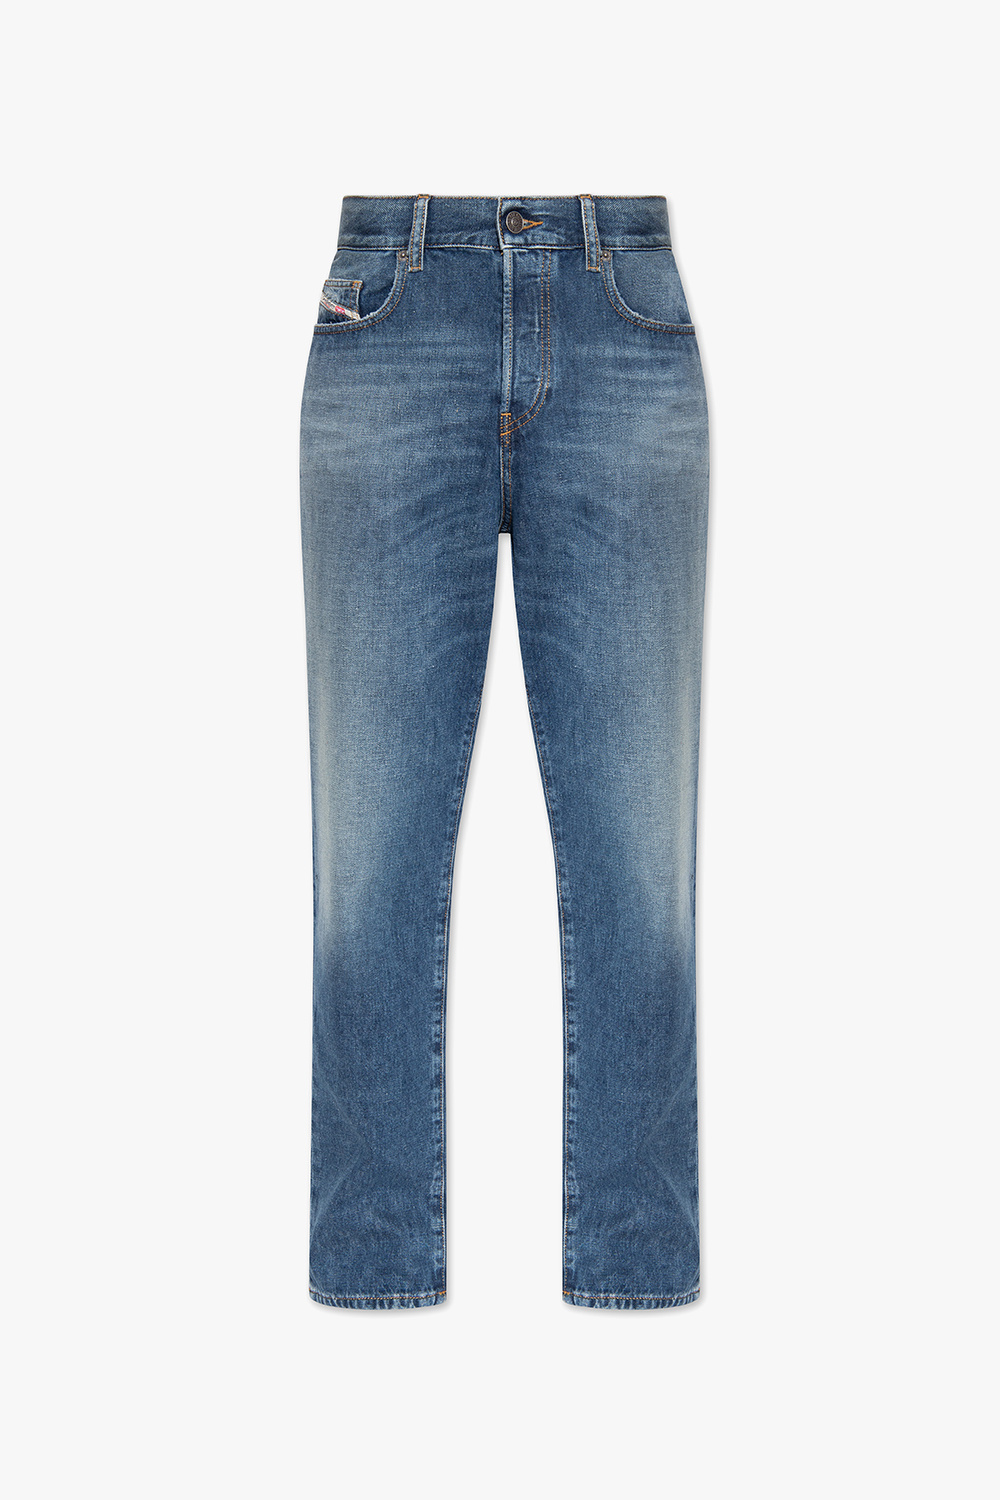 Diesel ‘2020 D-VIKER’ jeans | Men's Clothing | Vitkac